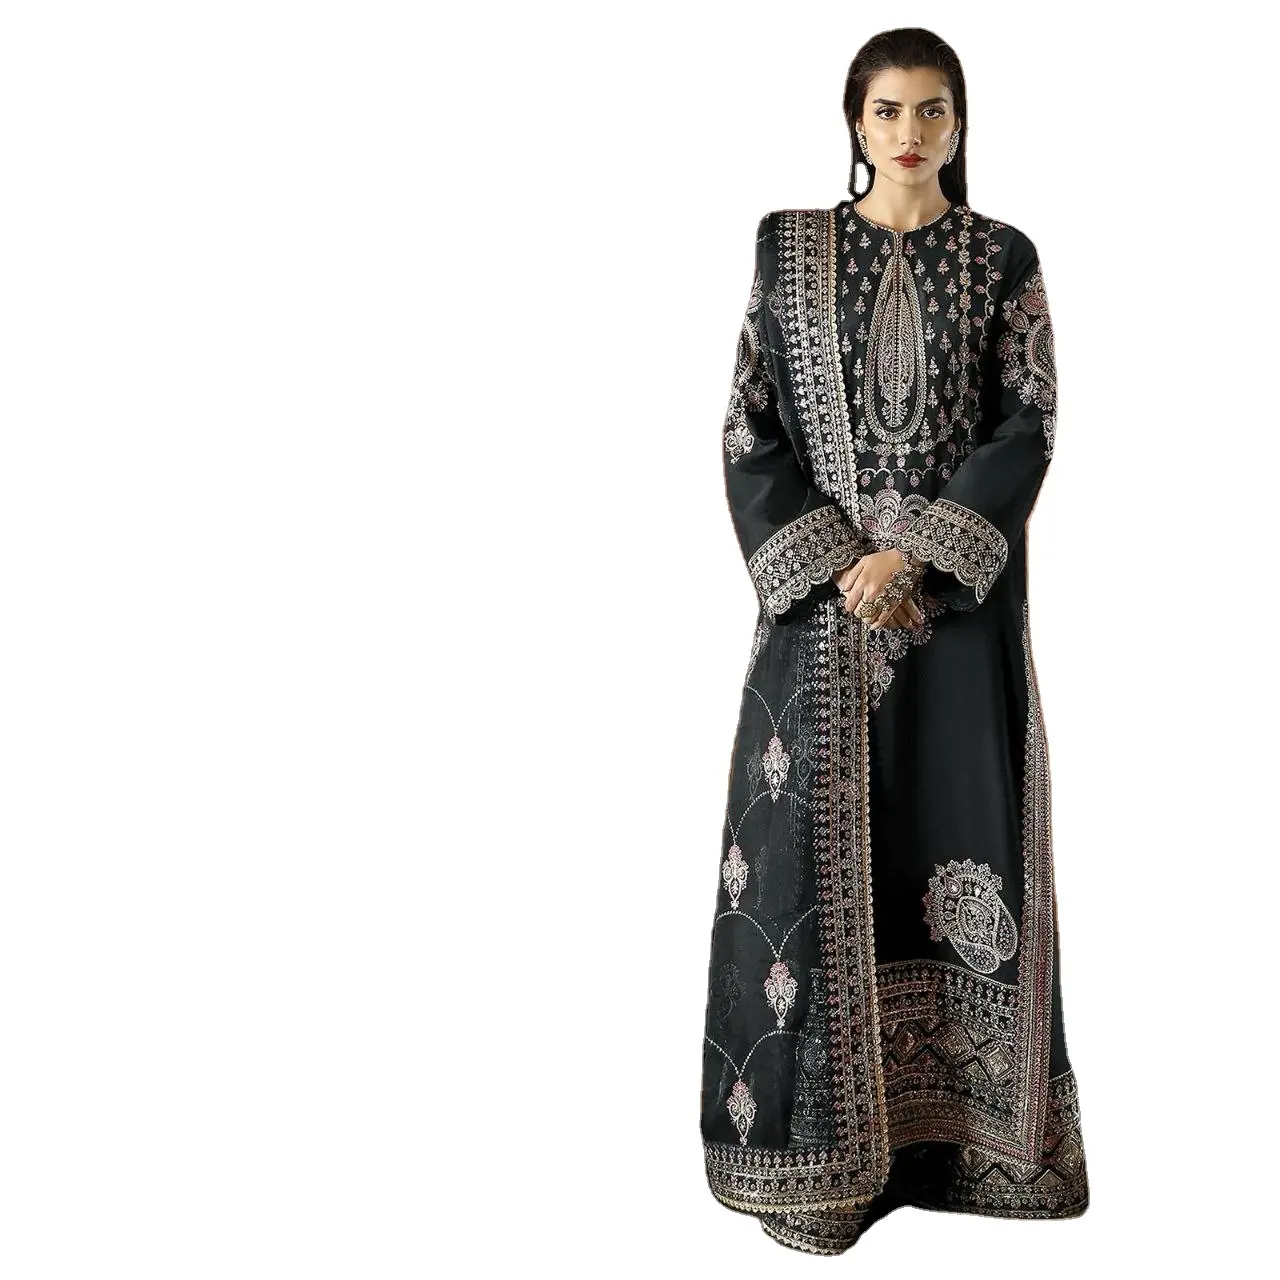 שמלות פקיסטניות באיכות פרימיום לספק ויצואן עולמי קנה במחיר זול